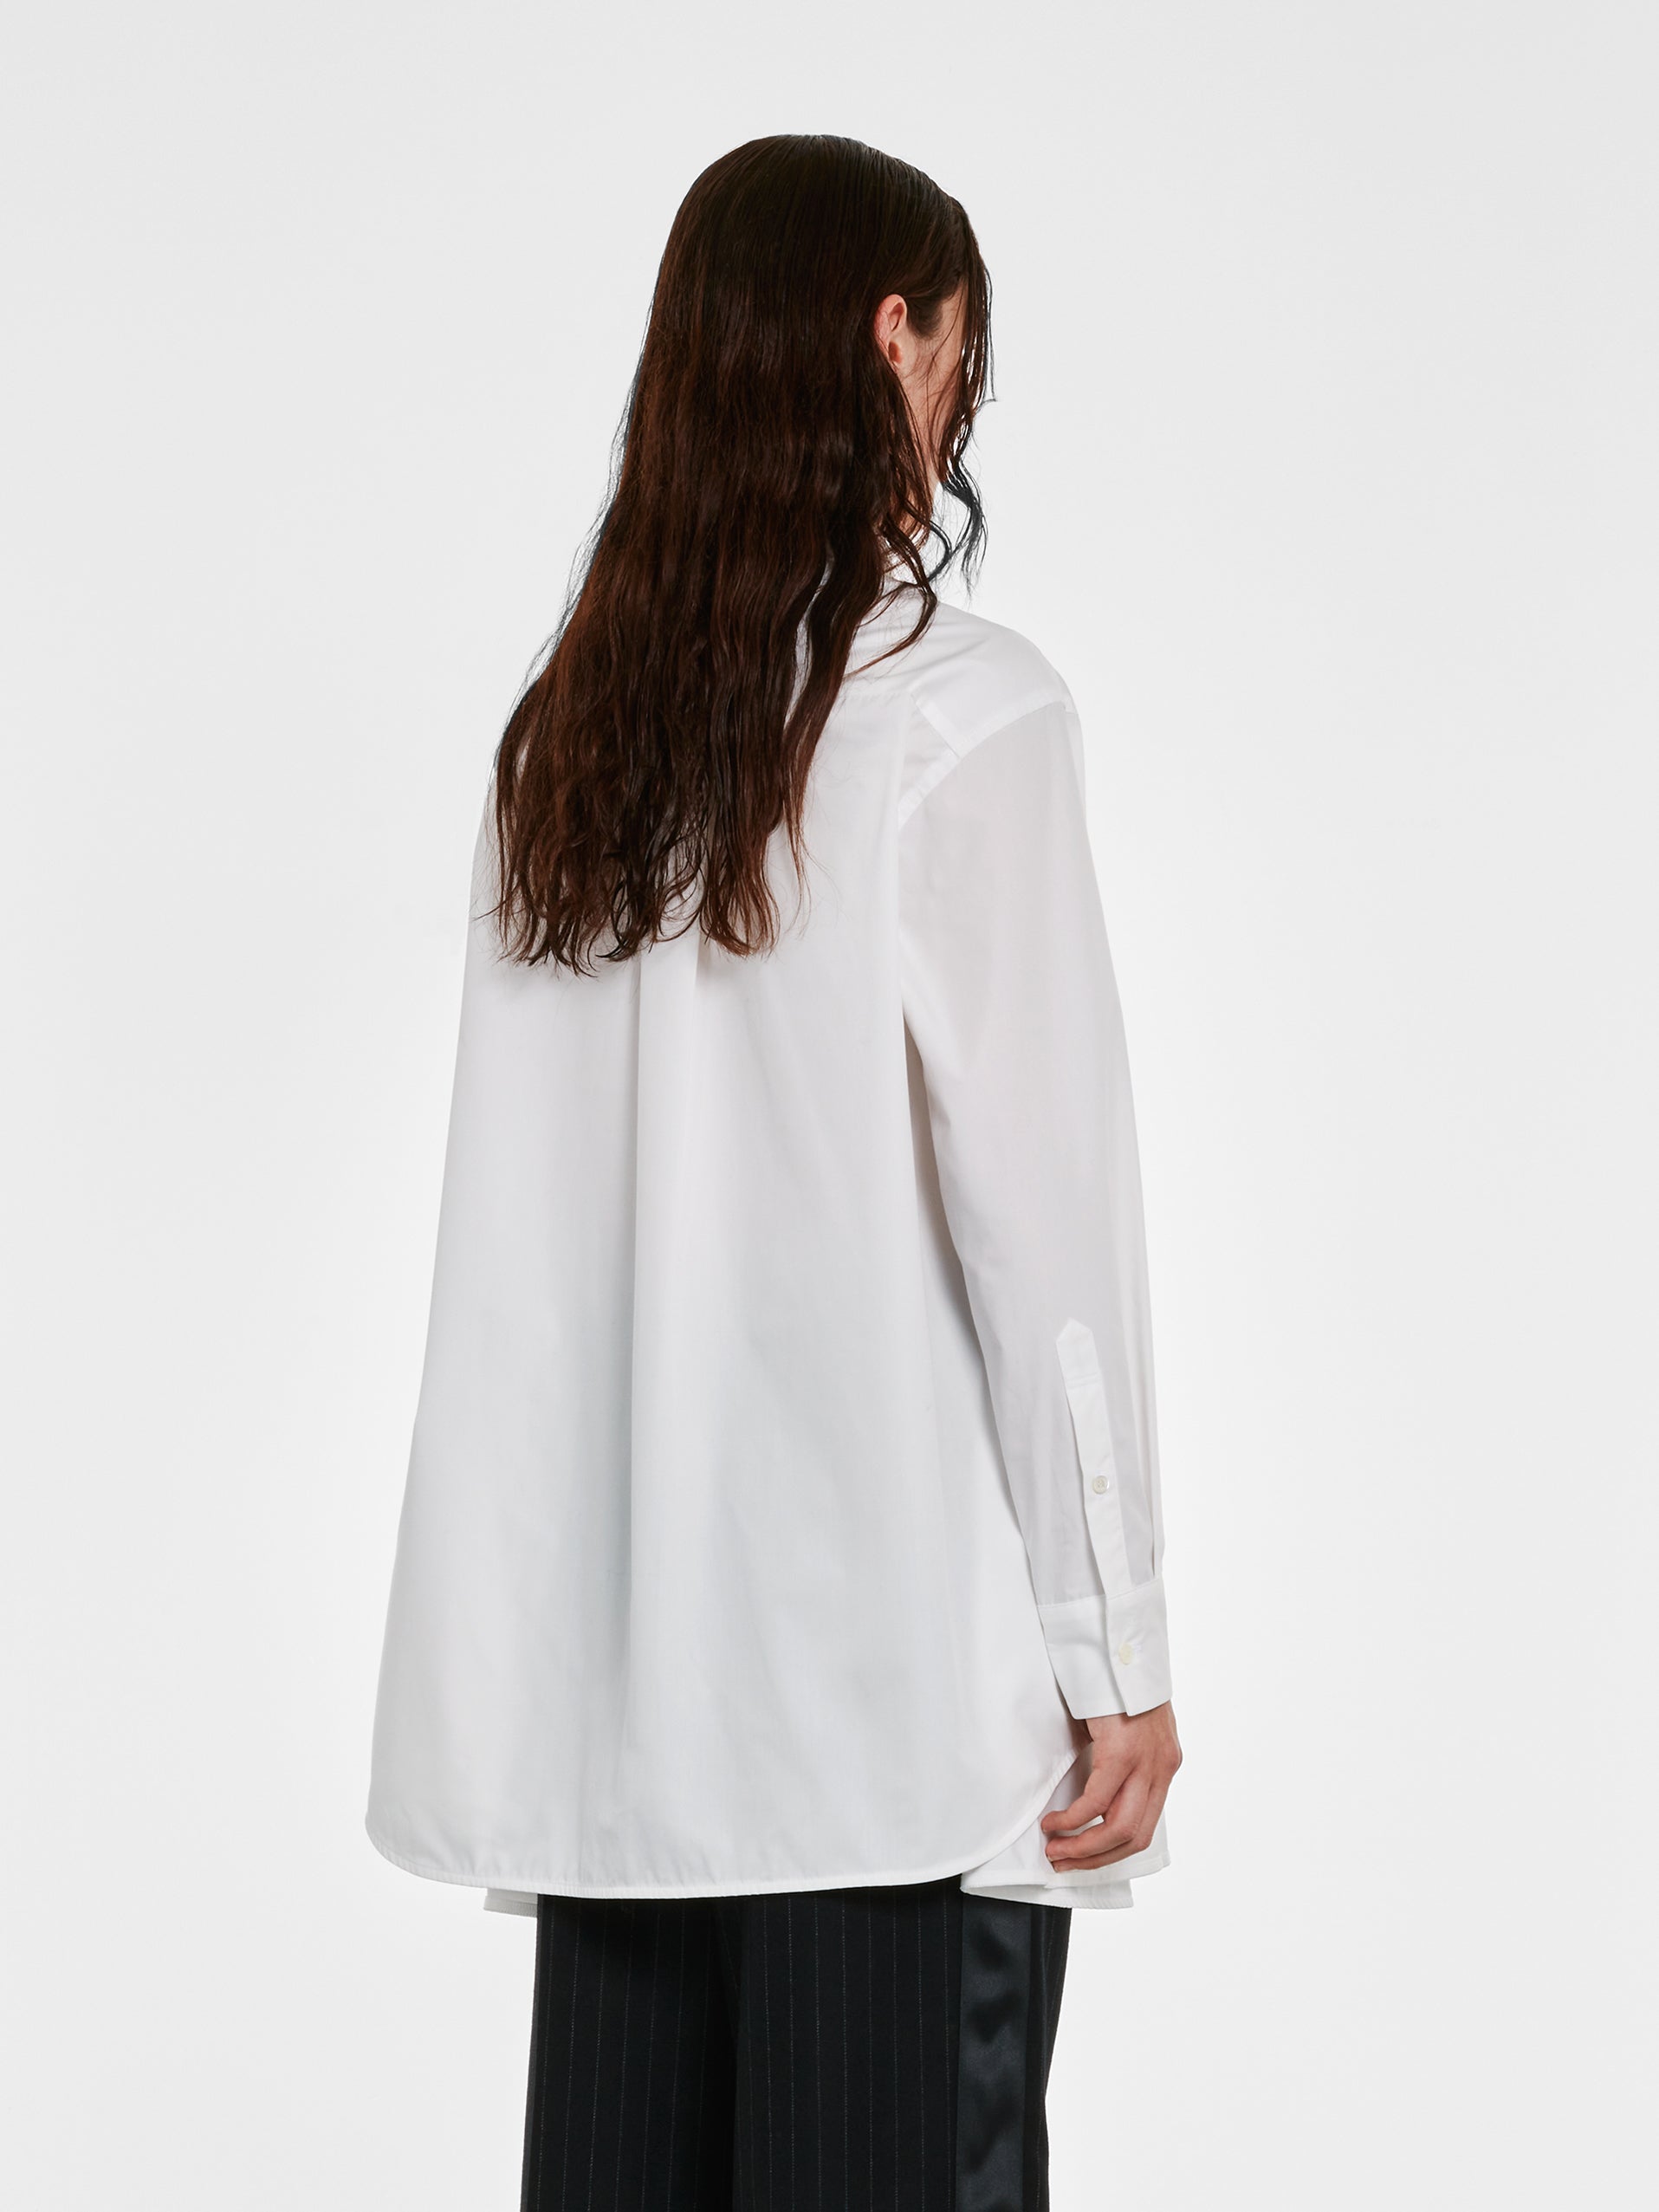 sacai - Women’s Cotton Poplin Dress - (White) view 4